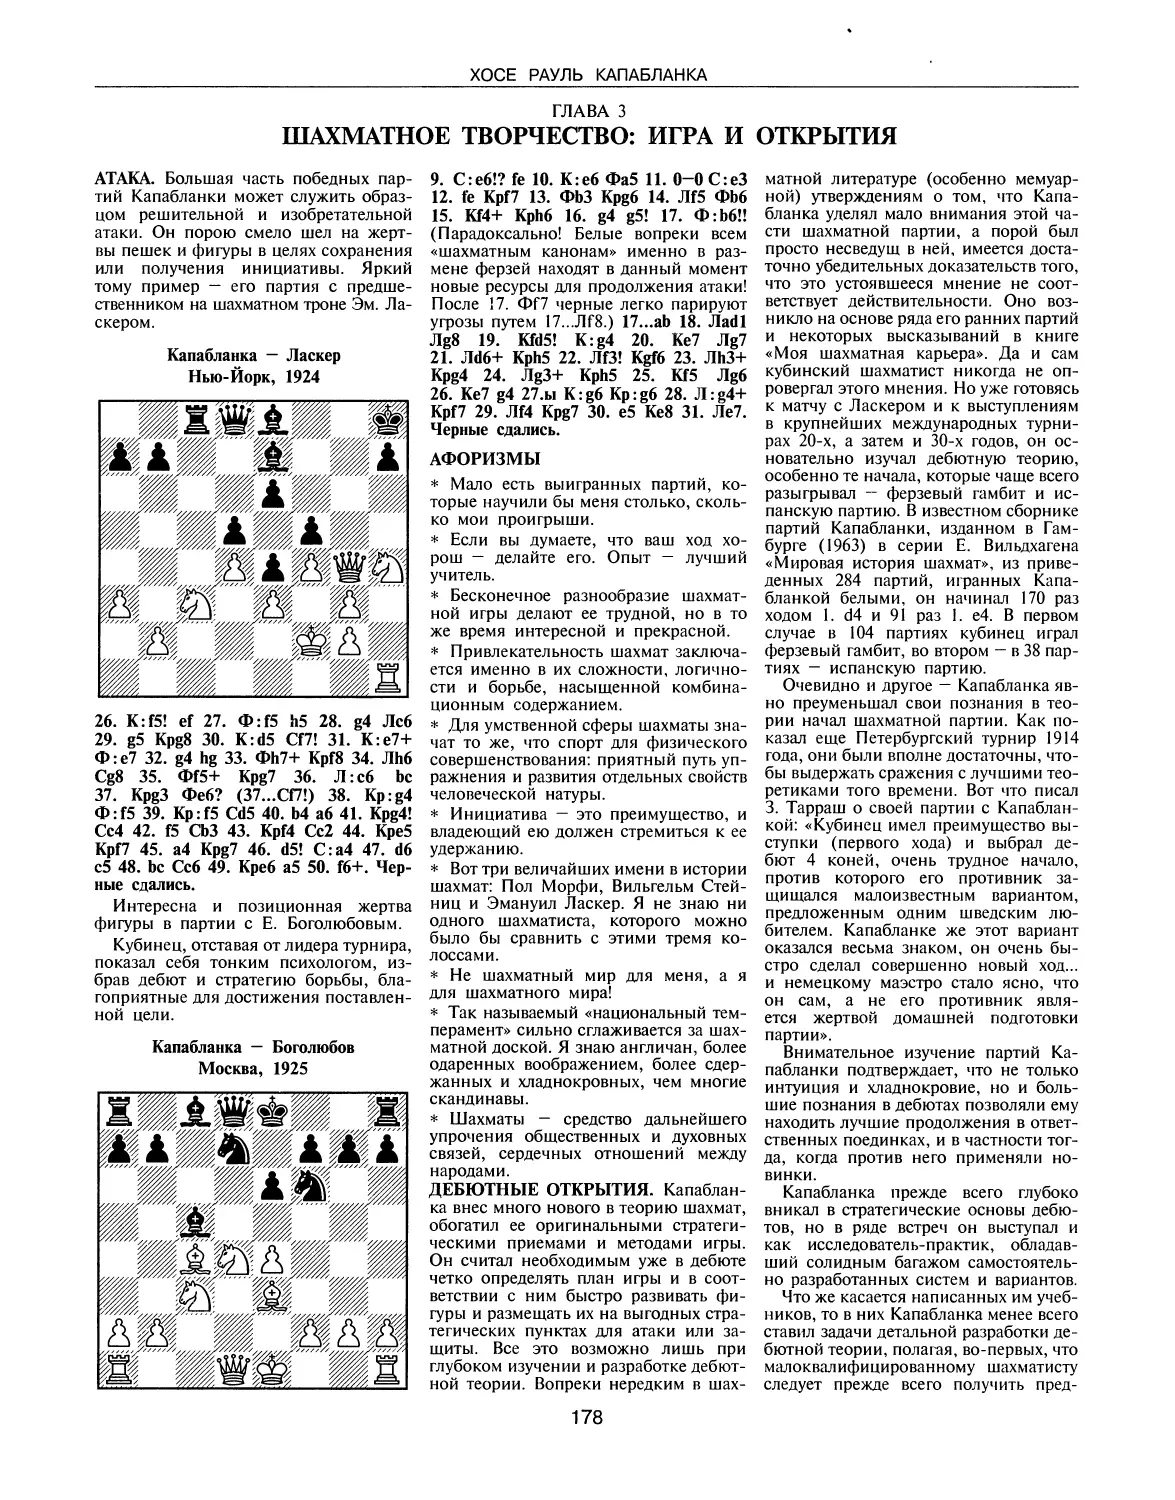 ГЛАВА 3. Шахматное творчество: игра и открытия
Афоризмы
Дебютные открытия